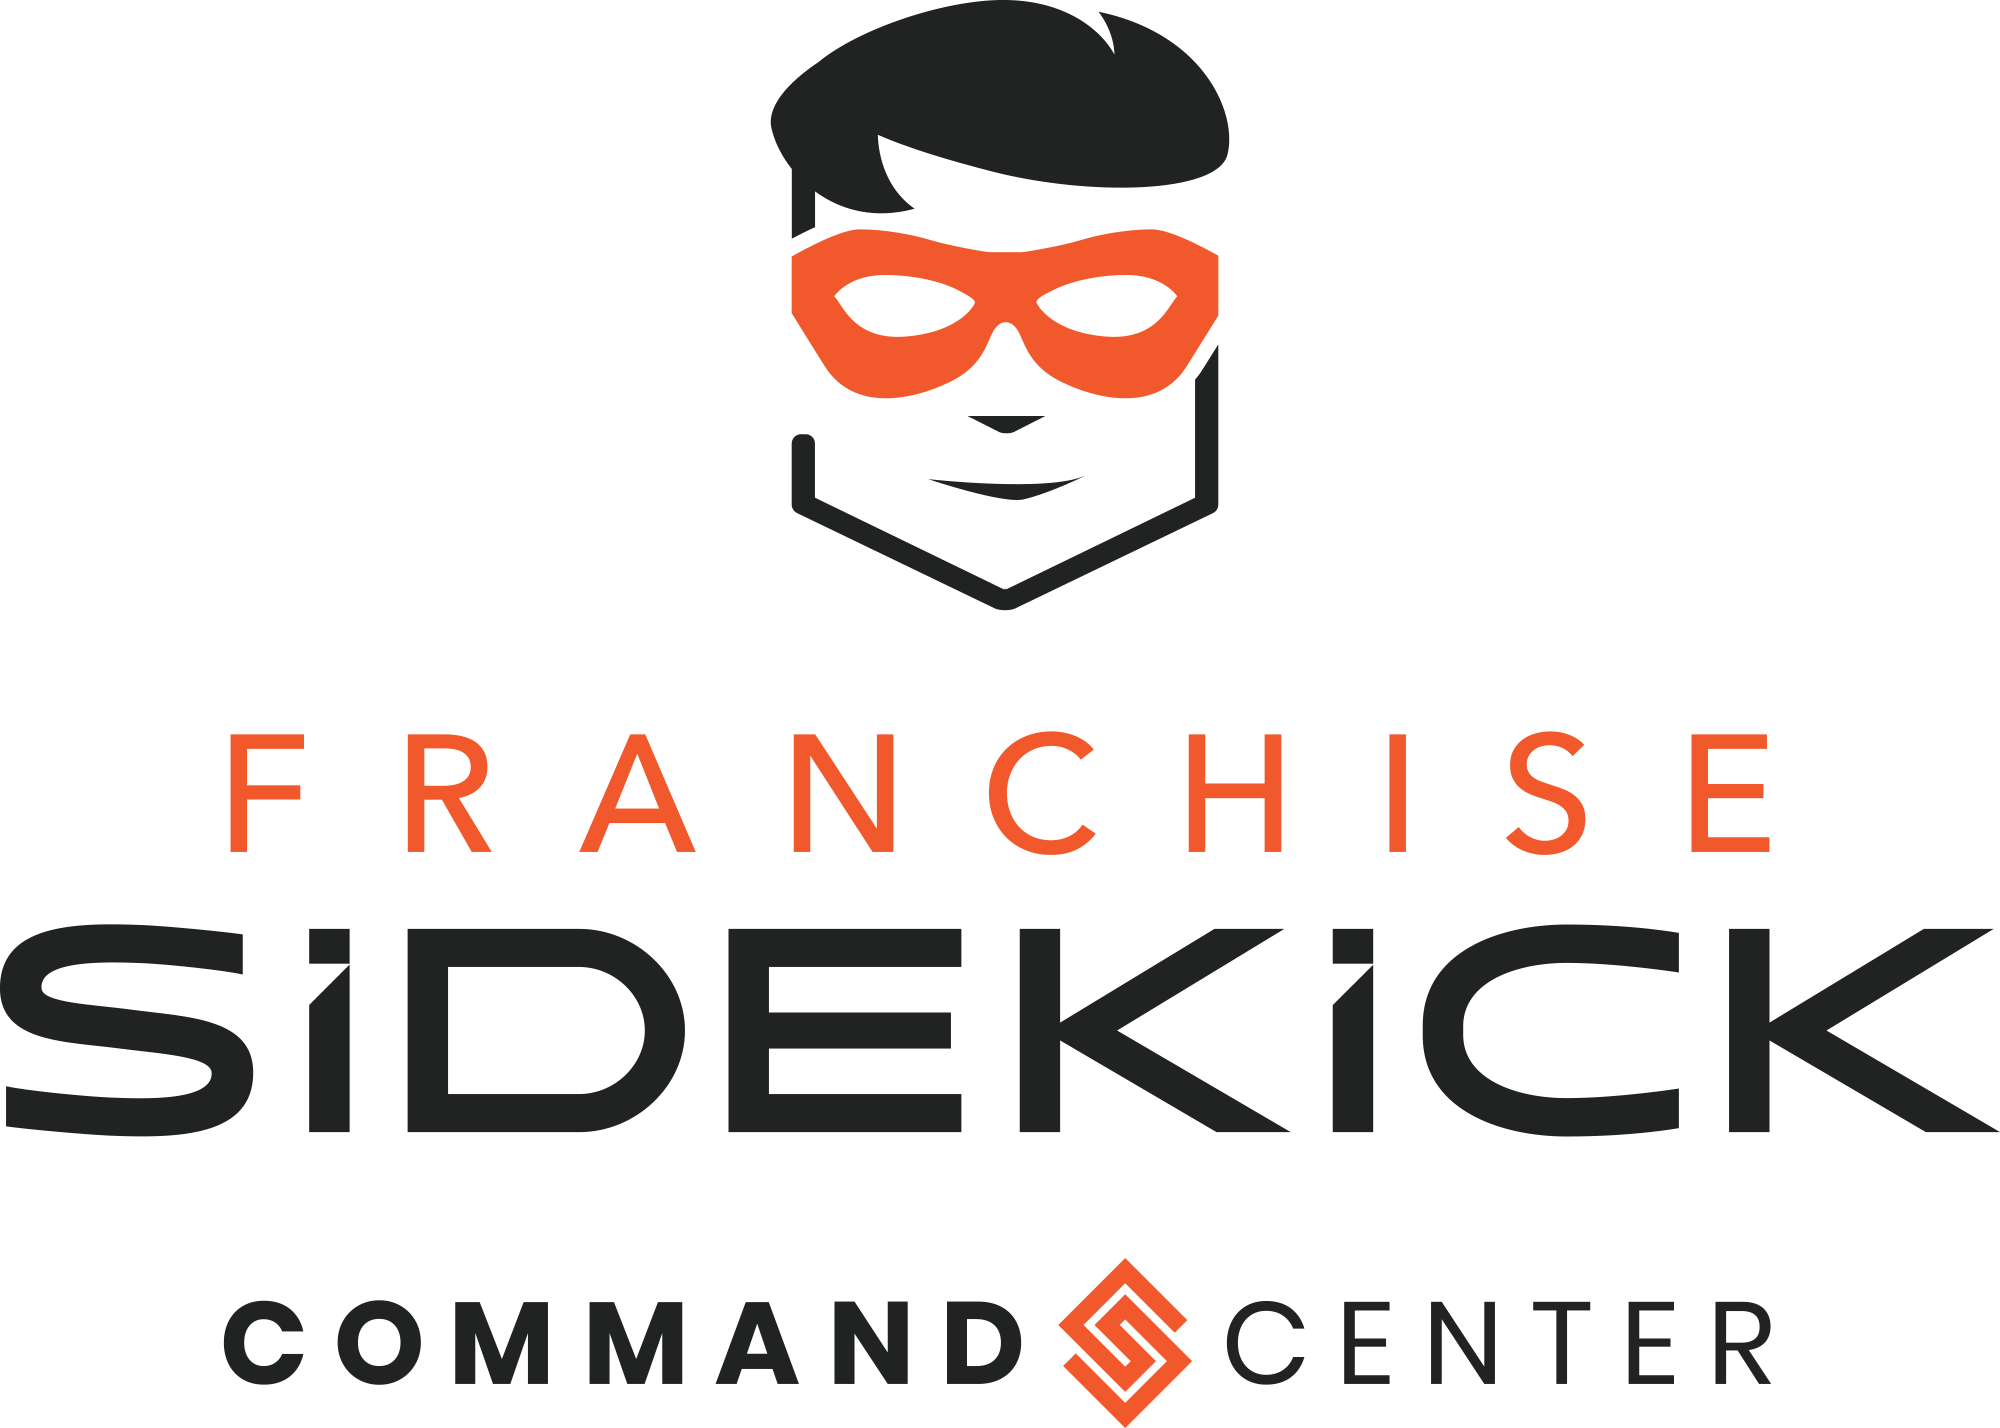 Franchise Sidekick Command Center